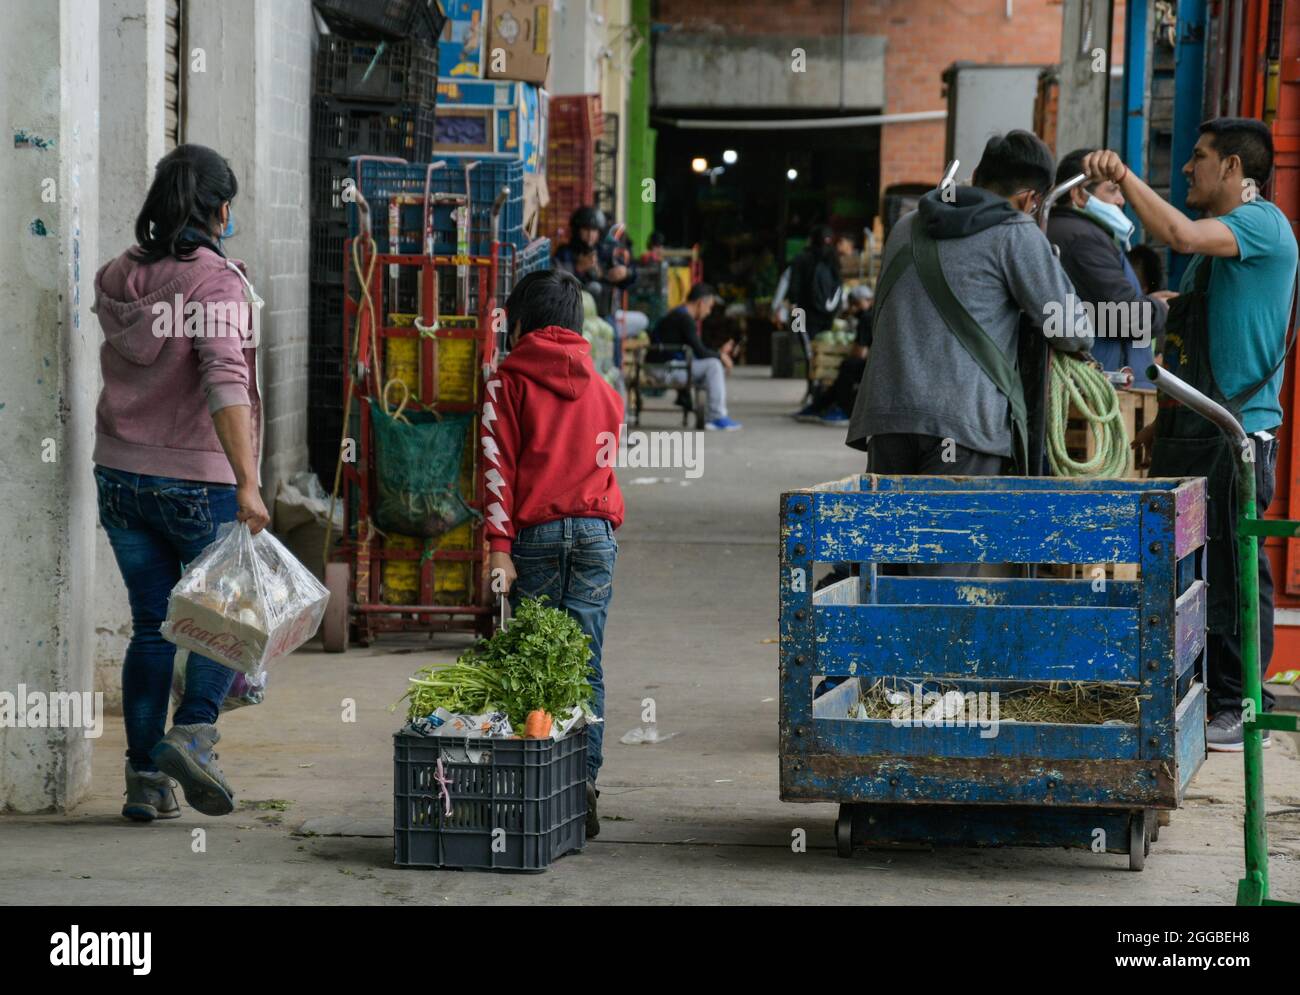 MEXICO, MEXIQUE - AOÛT 30 : David Solano, 8 ans, et Christian Vazquez, 9 ans, à la recherche dans les poubelles de la Central de Abasto, les fruits, les légumes et toute nourriture qui est en bon état pour l'apporter à la maison. Bien que de nombreux enfants de leur âge commencent à retourner dans la classe, ils n'ont pas la même fortune parce que leur situation économique a été affectée par le confinement de Covid-19 et ils ont dû travailler avec leurs parents pour avoir à manger. Le 30 août 2021 à Mexico, Mexique. (Photo par Aidee Martinez/Eyepix Group/Sipa USA) Banque D'Images